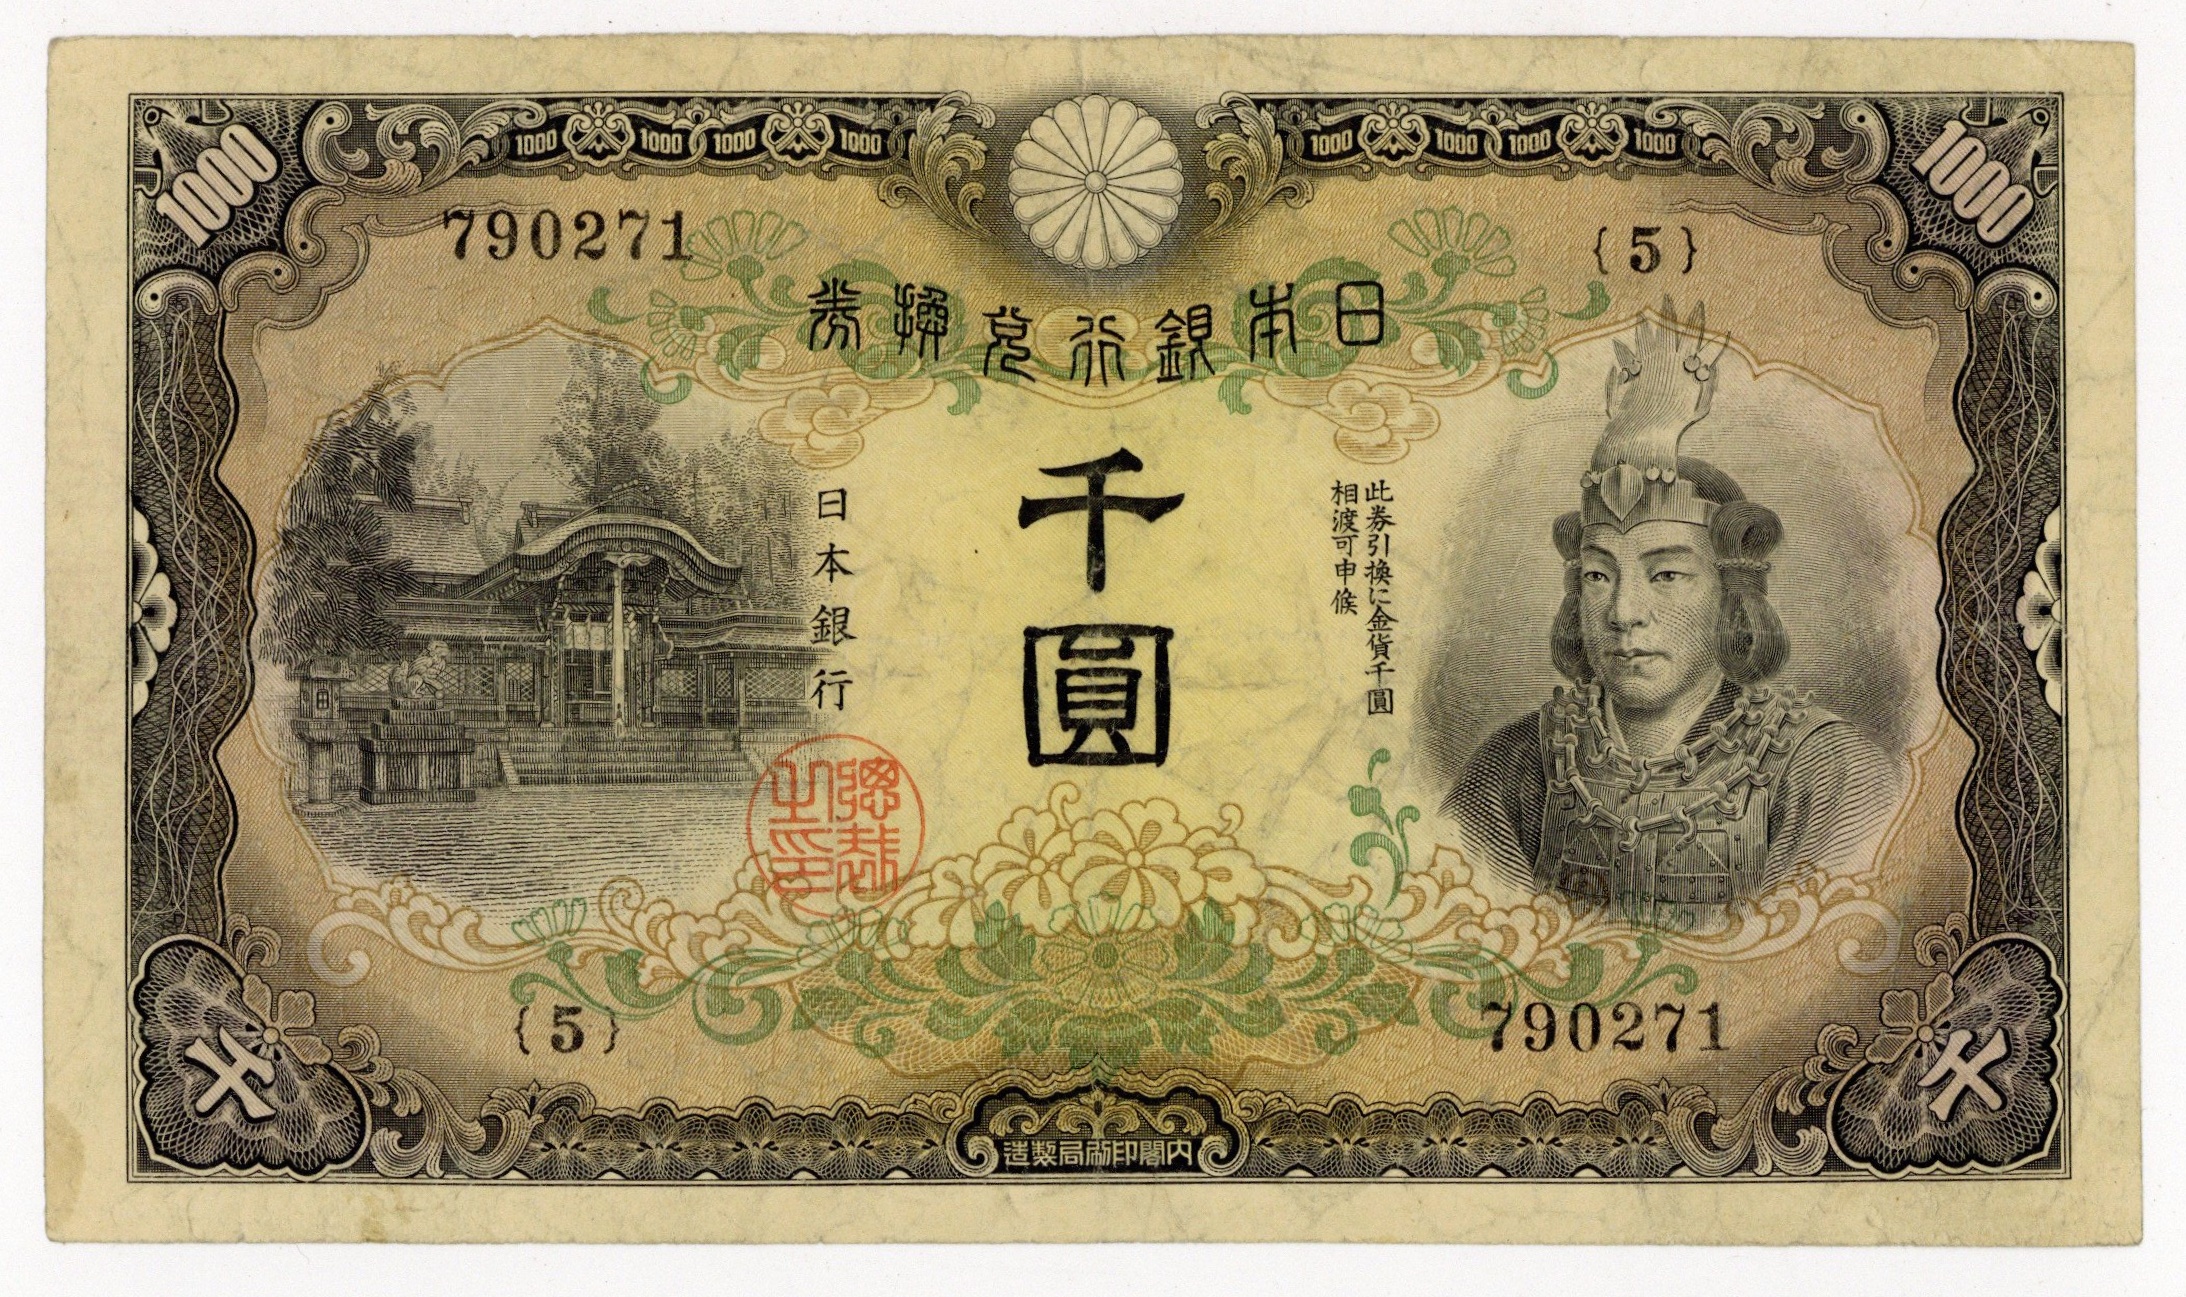 業界最安値 | 日本武尊1000円 兌換券甲号1000円 並品昭和17年 1942年 